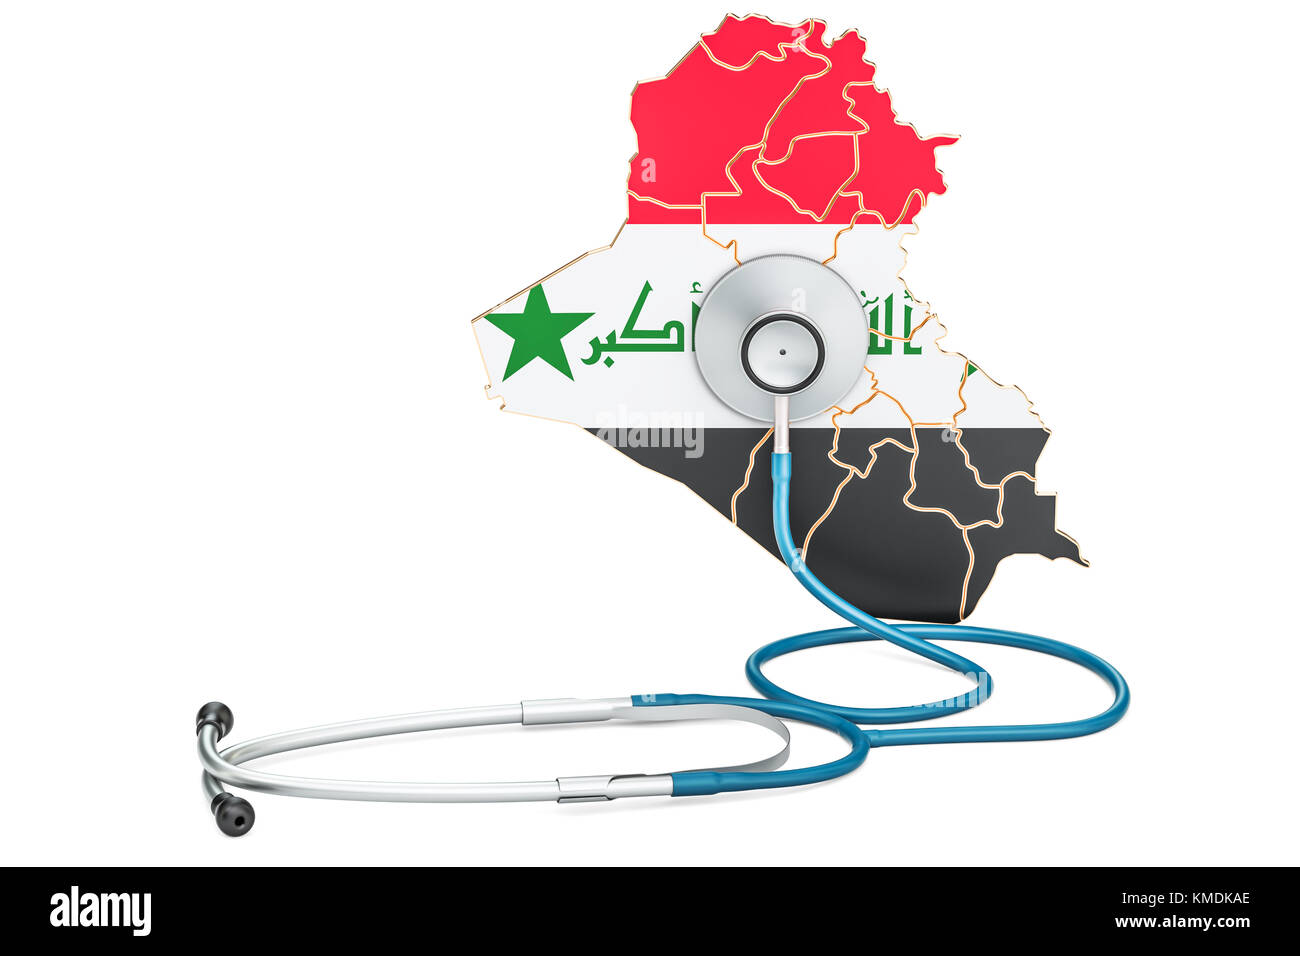 Irakische Karte mit Stethoskop, national Health Care Concept, 3D-Rendering Stockfoto